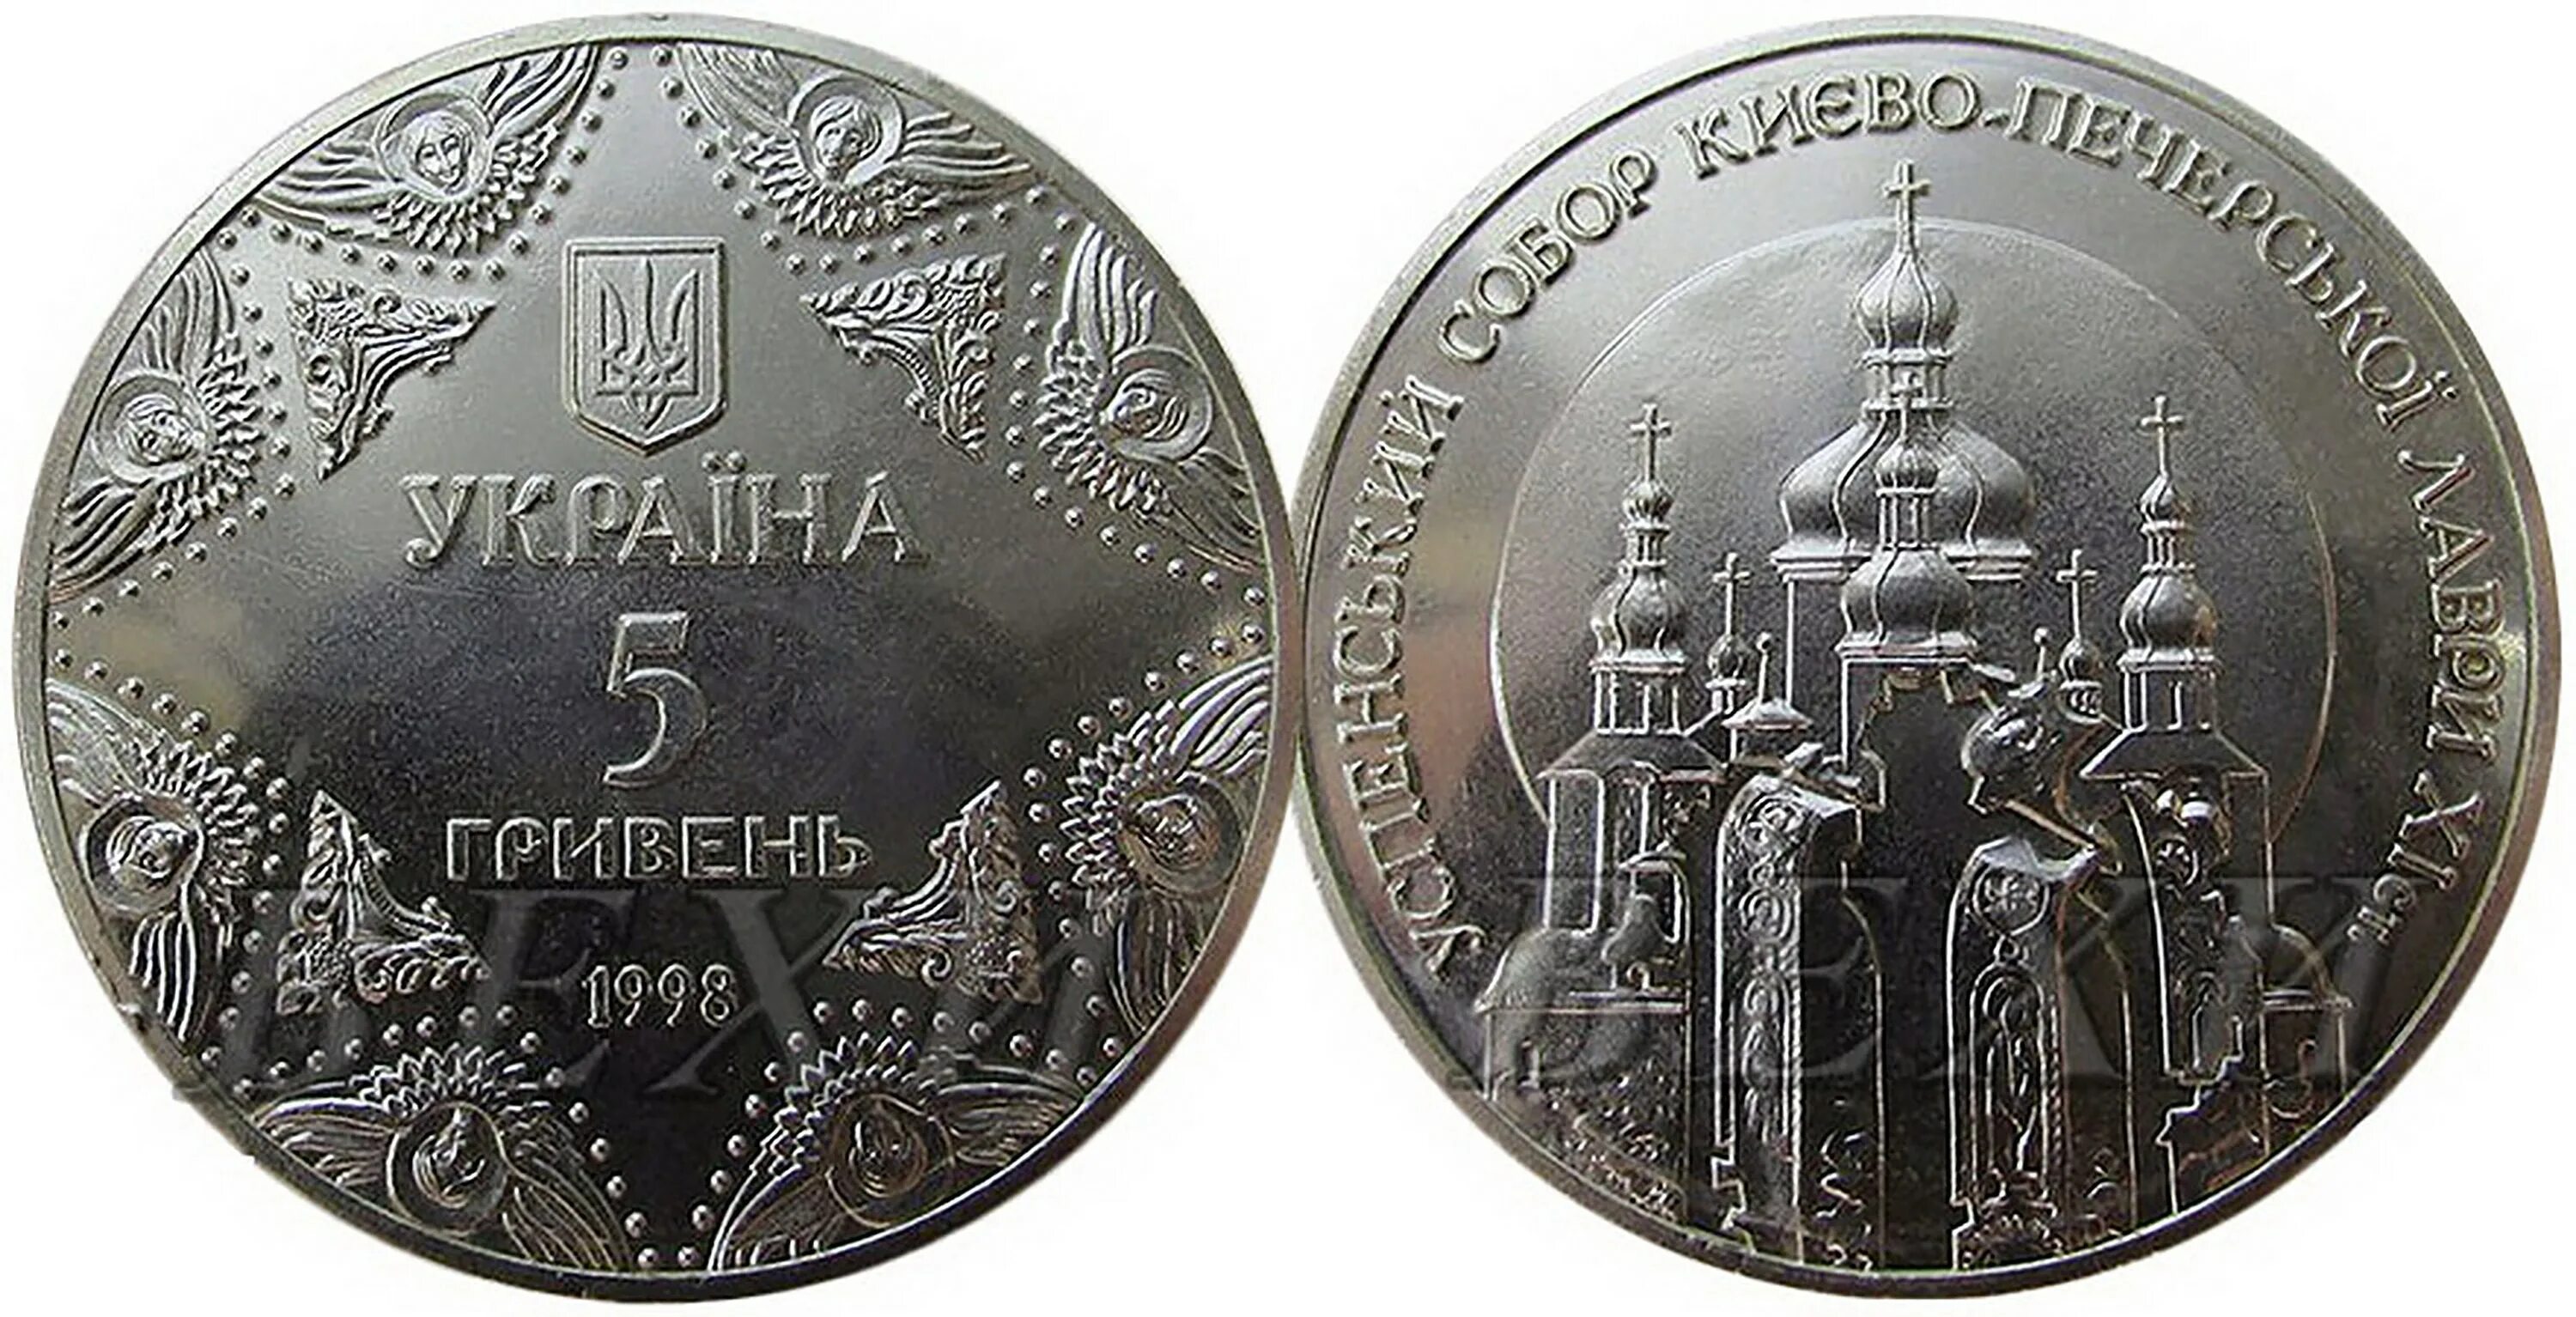 Куплю 5 гривен монетой. 5 Гривен монета. 5 Гривен трезубец монета. Монеты Украины 5 гривен памятные. Монеты памятные гривны.